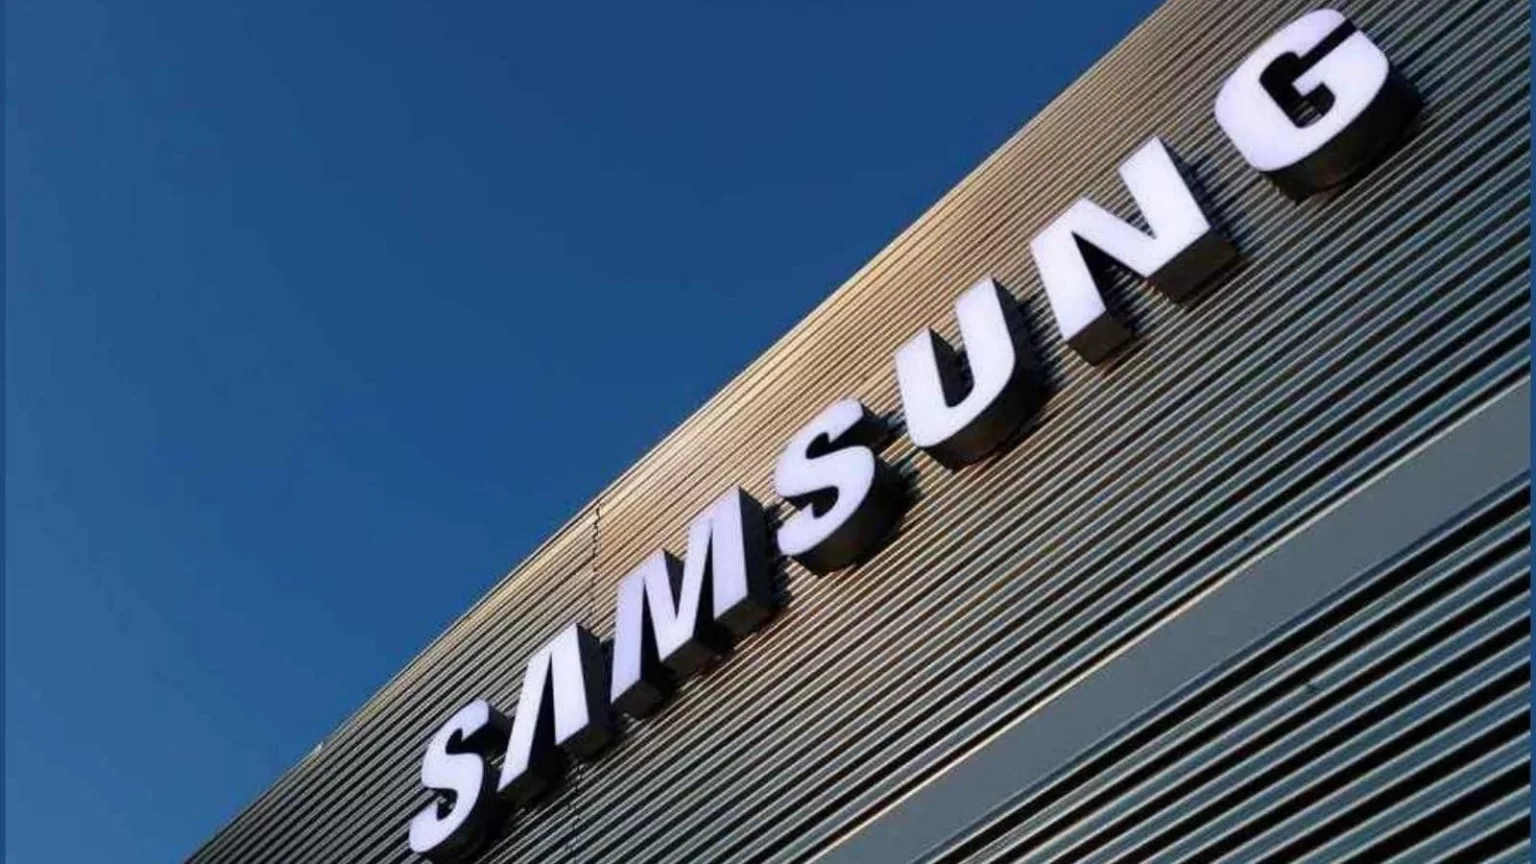 samsung reuters img 163498304416x9 1 1536x864 - Samsung's Q4 2022 profit falls by 70%